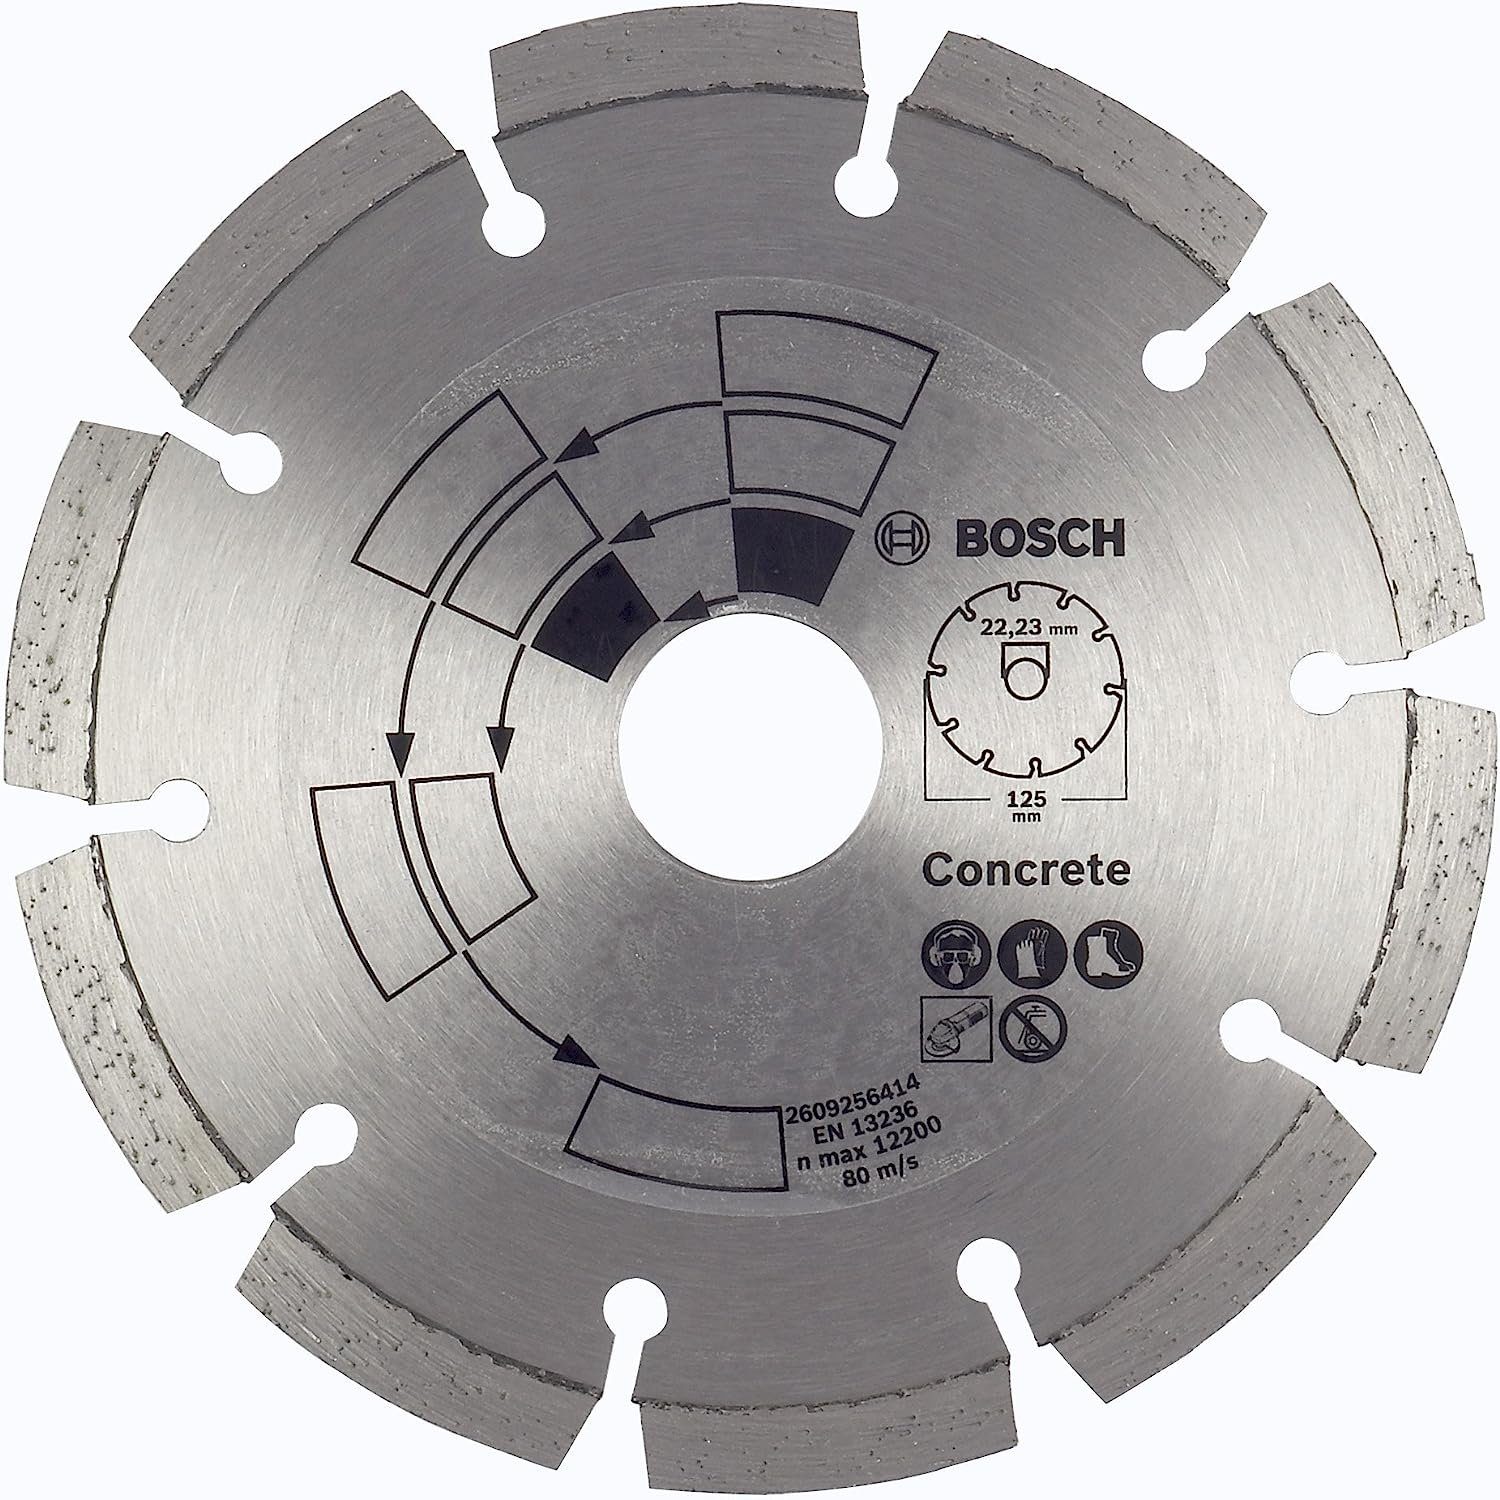 BOSCH Bohrfutter Bosch 2609256414 DIY Diamanttrennscheibe Beton Top Beton/Granit, 125